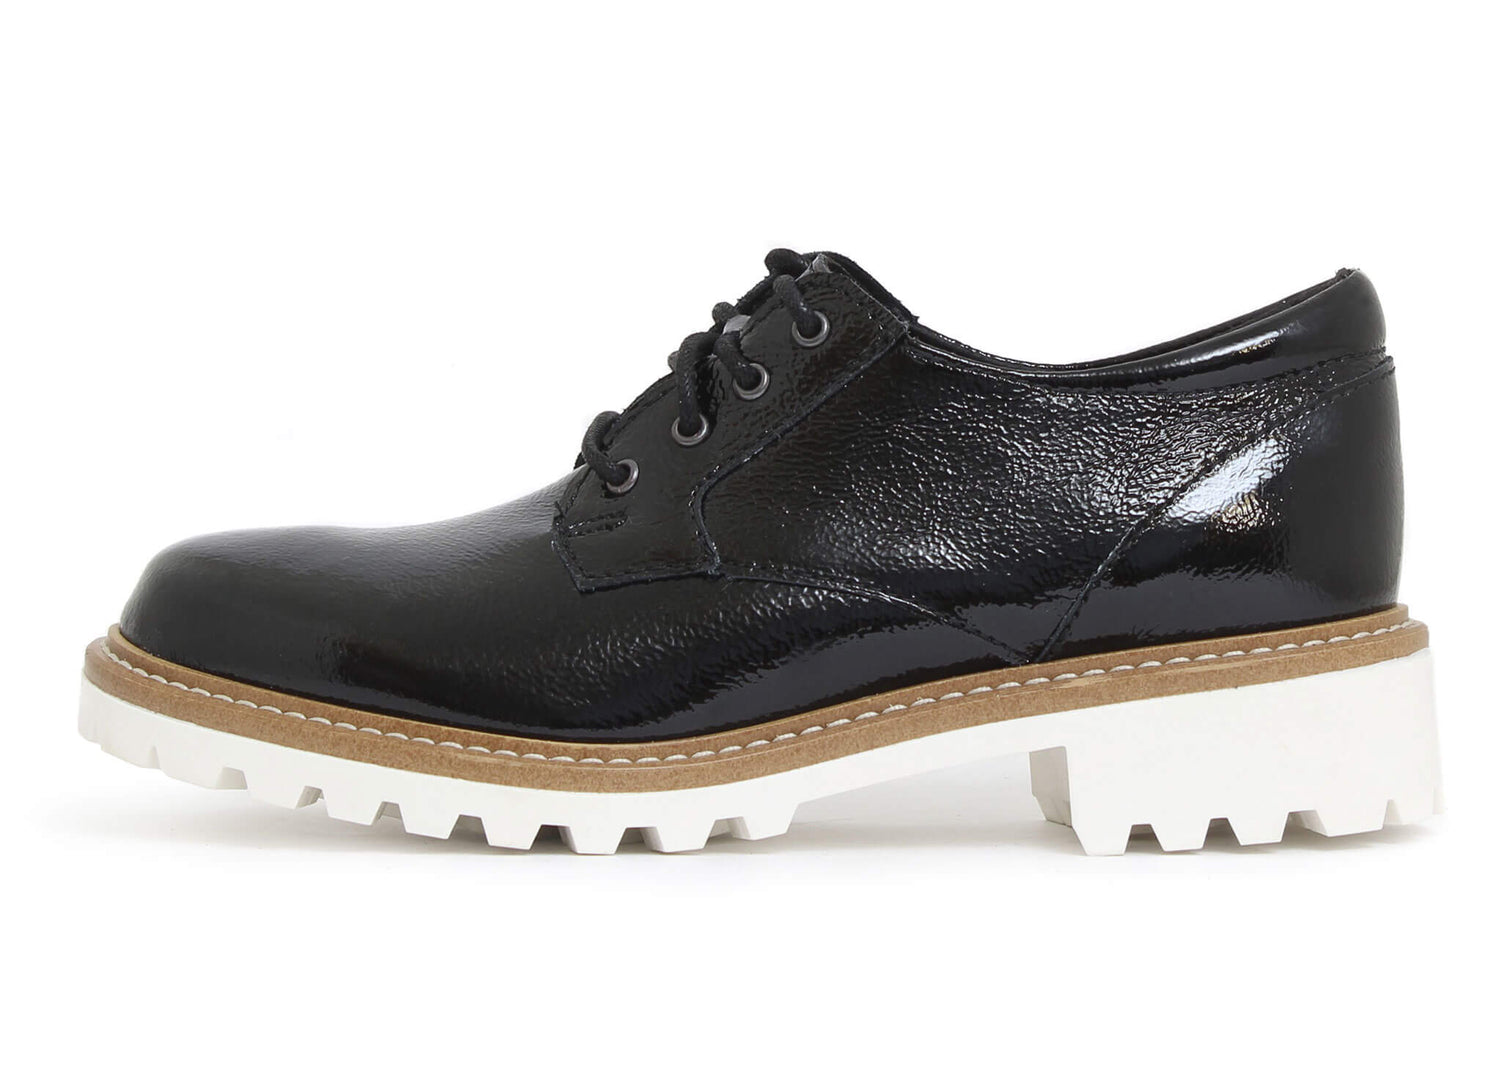 Les chaussures lacées Martino combinent confort et style, en plus d'offrir un ajustement parfait.